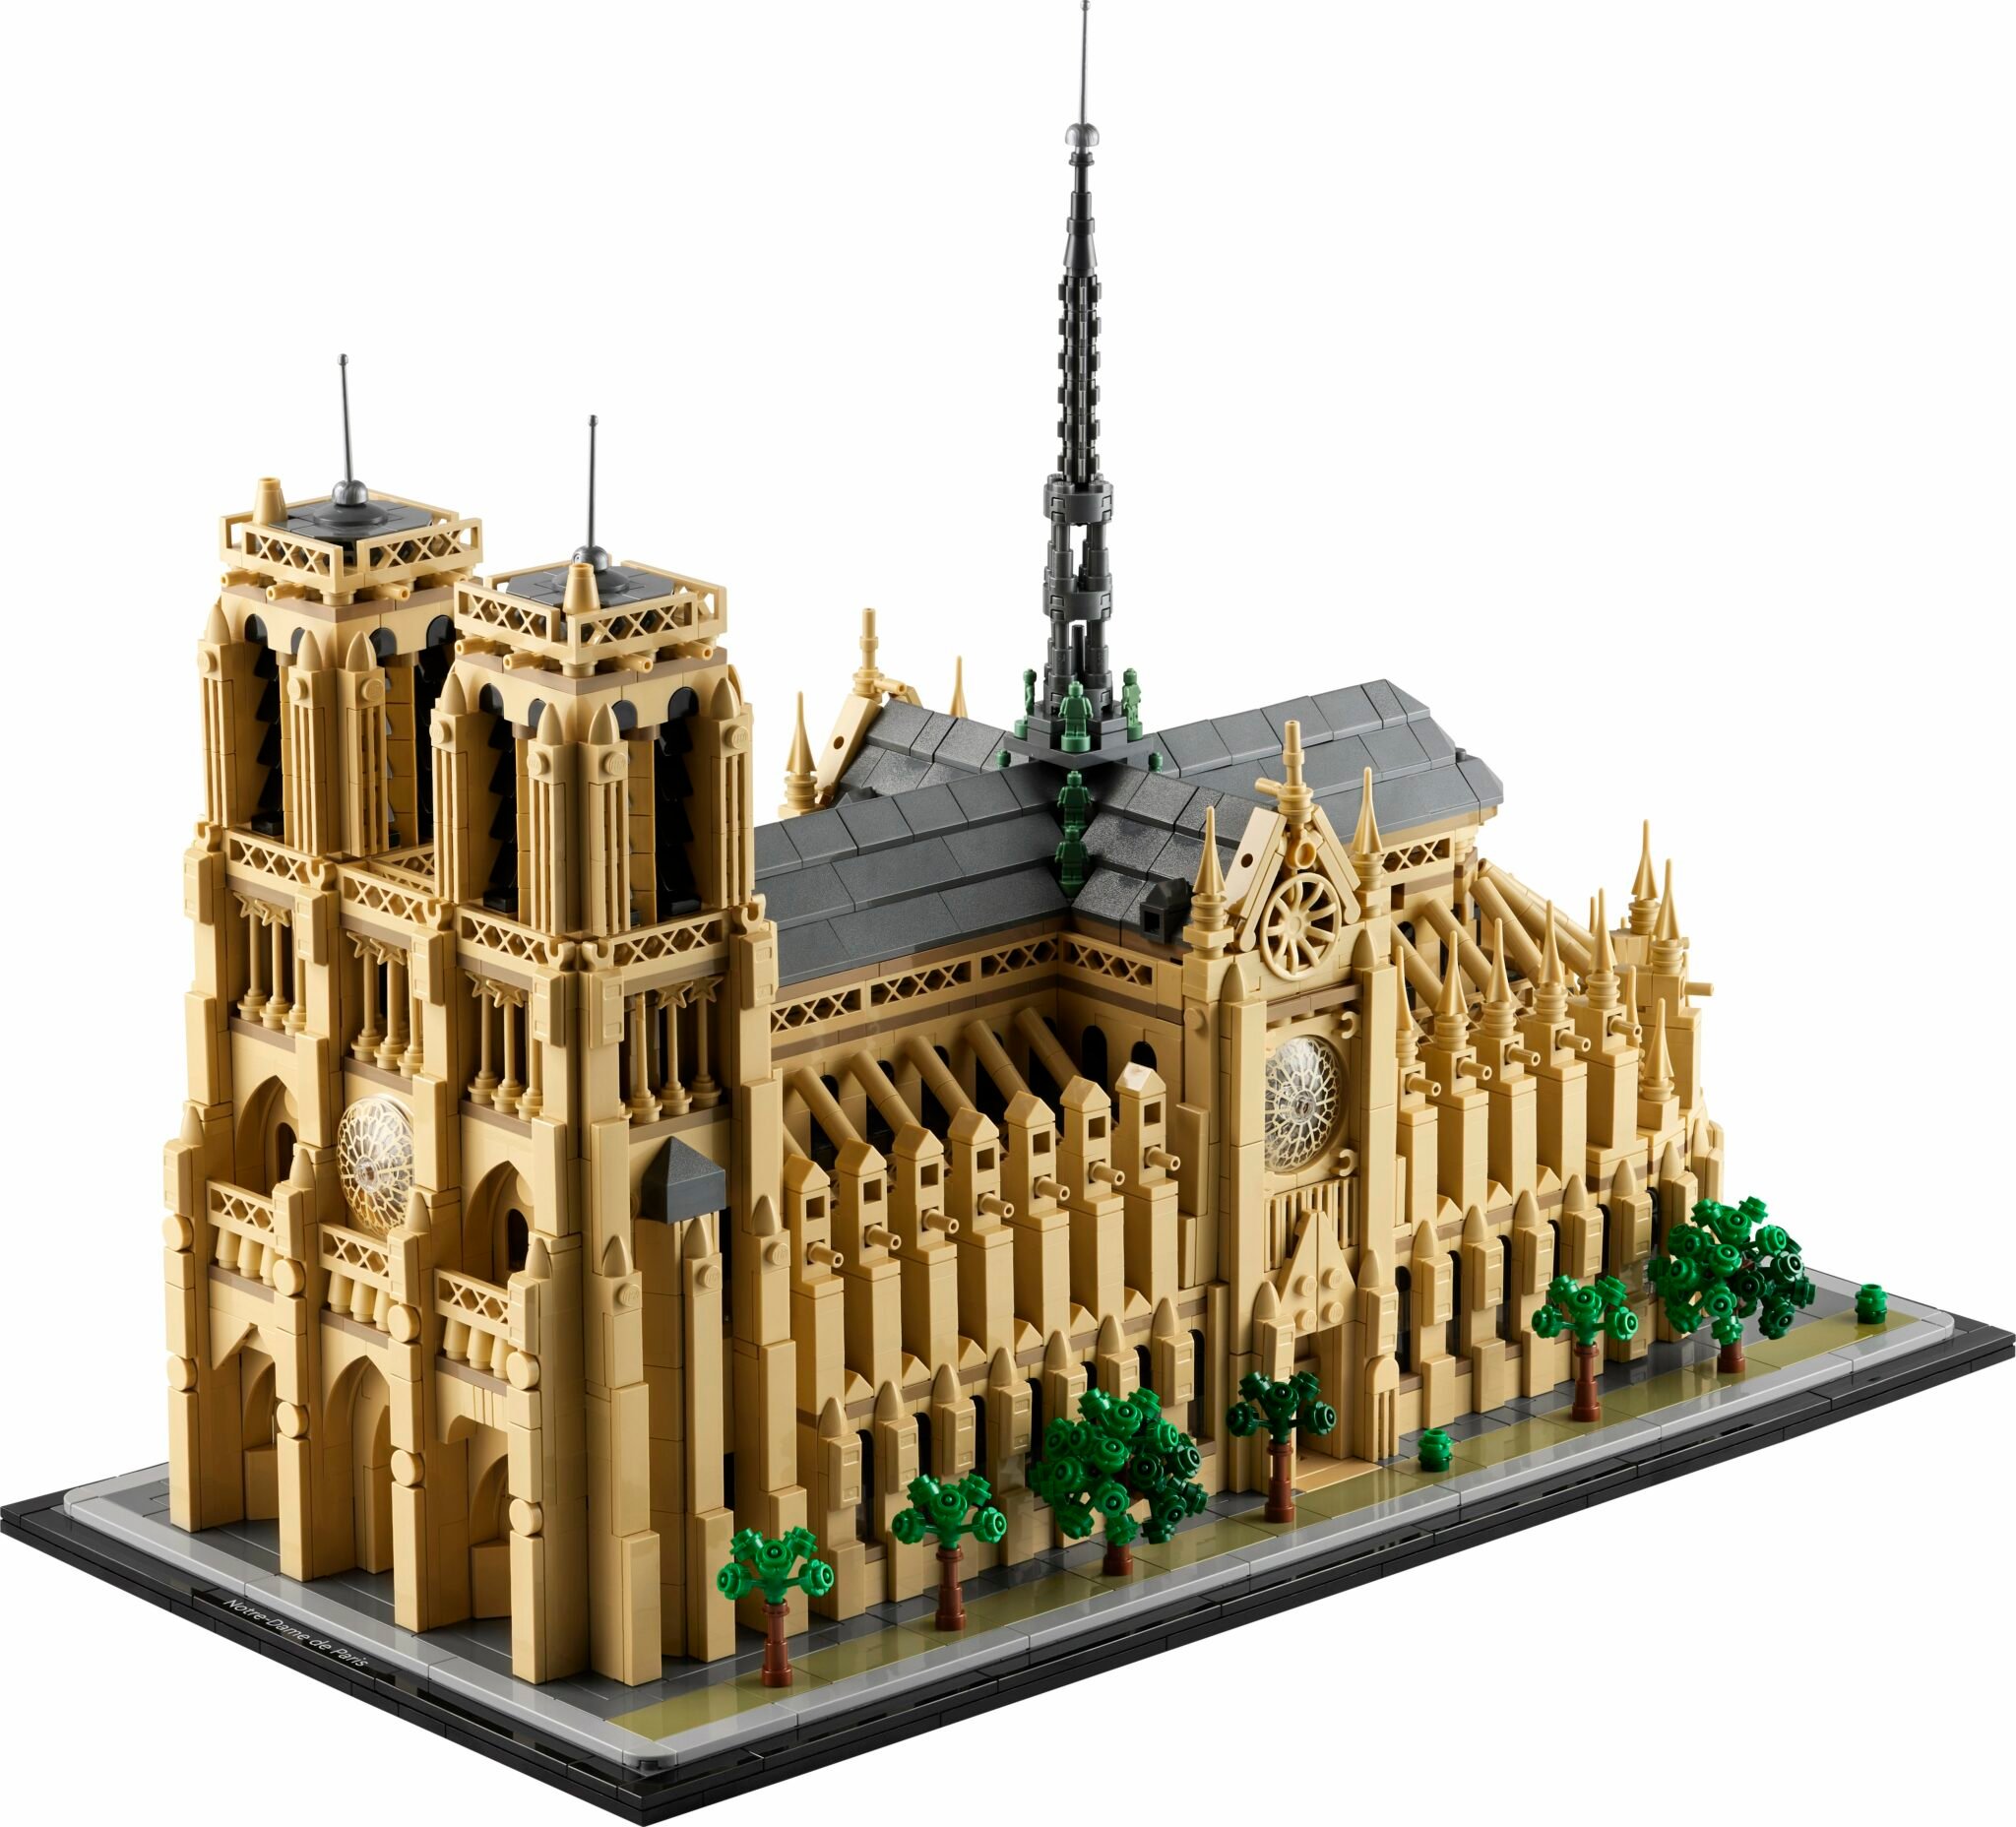 LEGO - Notre Dame - The Catholic weekly